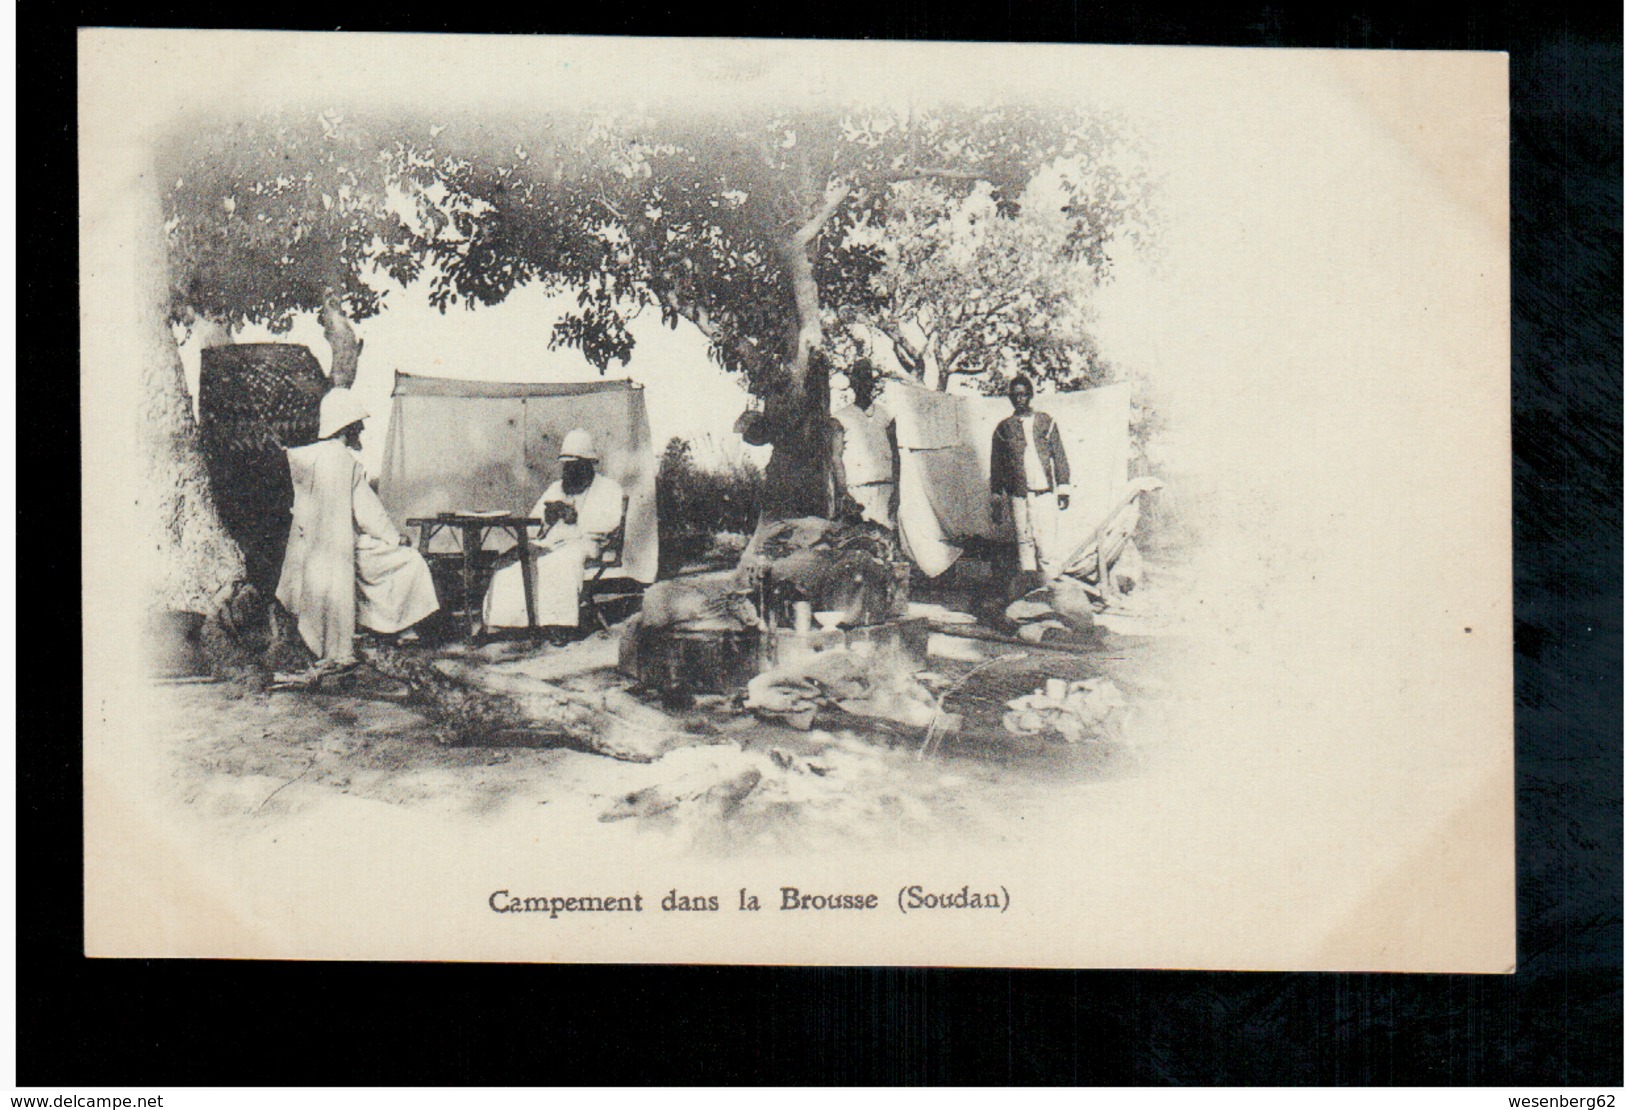 SOUDAN Campement Dans La Brousse (Soudan) Ca 1910 Old Postcard - Sudan